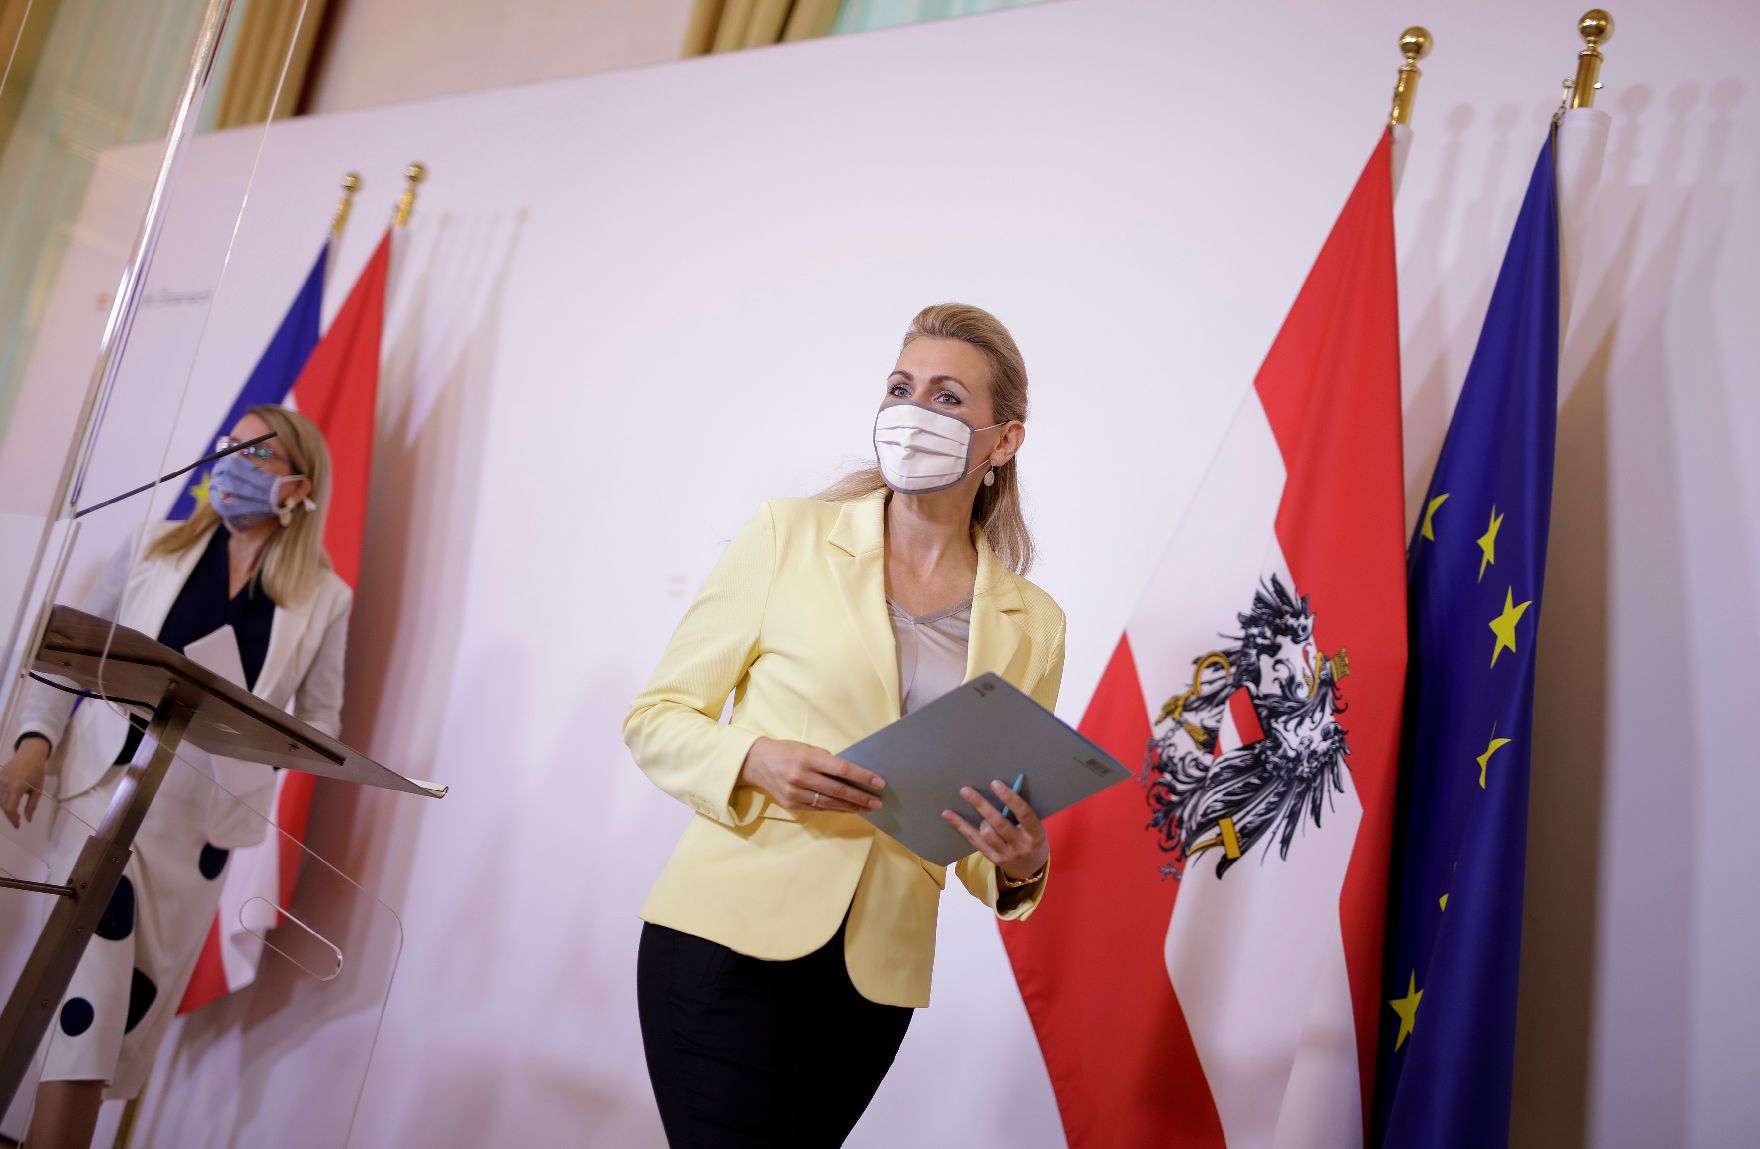 Am 2. Juni 2020 fand ein Pressestatement zu den Maßnahmen gegen die Krise im Bundeskanzleramt statt. Im Bild Wirtschaftsministerin Margarete Schramböck (l.) und Arbeitsministerin Christine Aschbacher (r.).